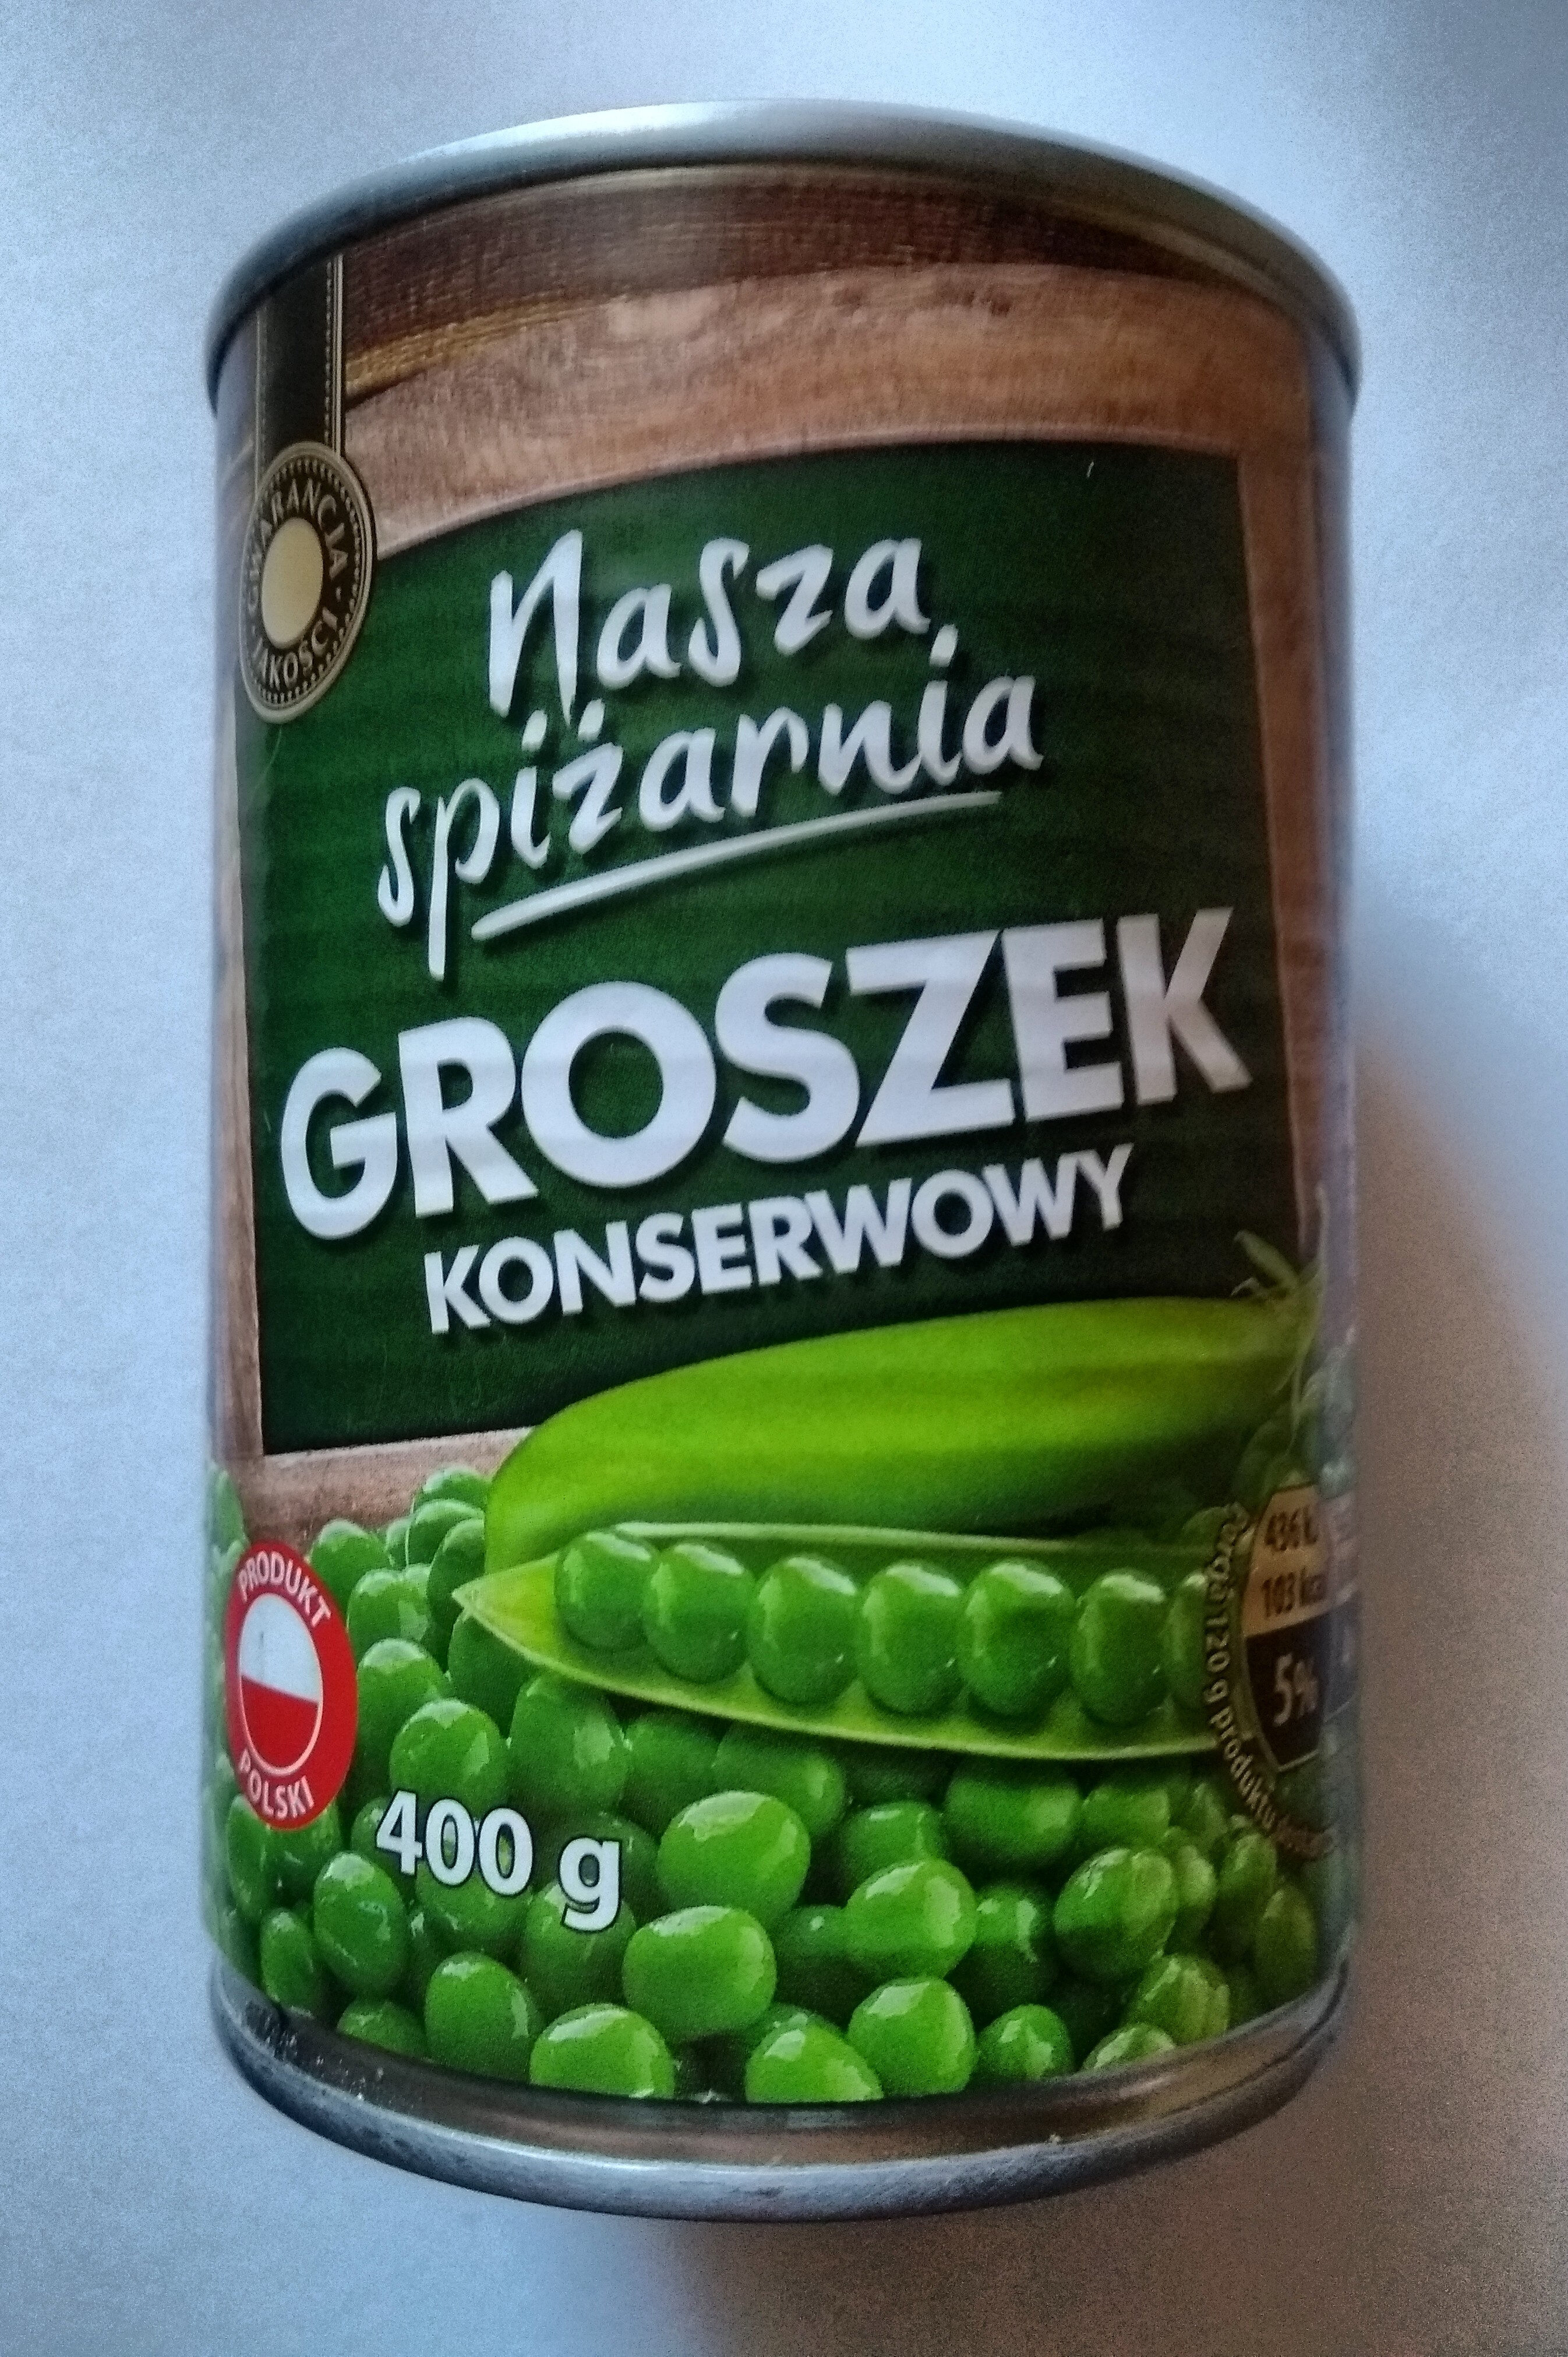 groszek konserwowy - Producto - pl